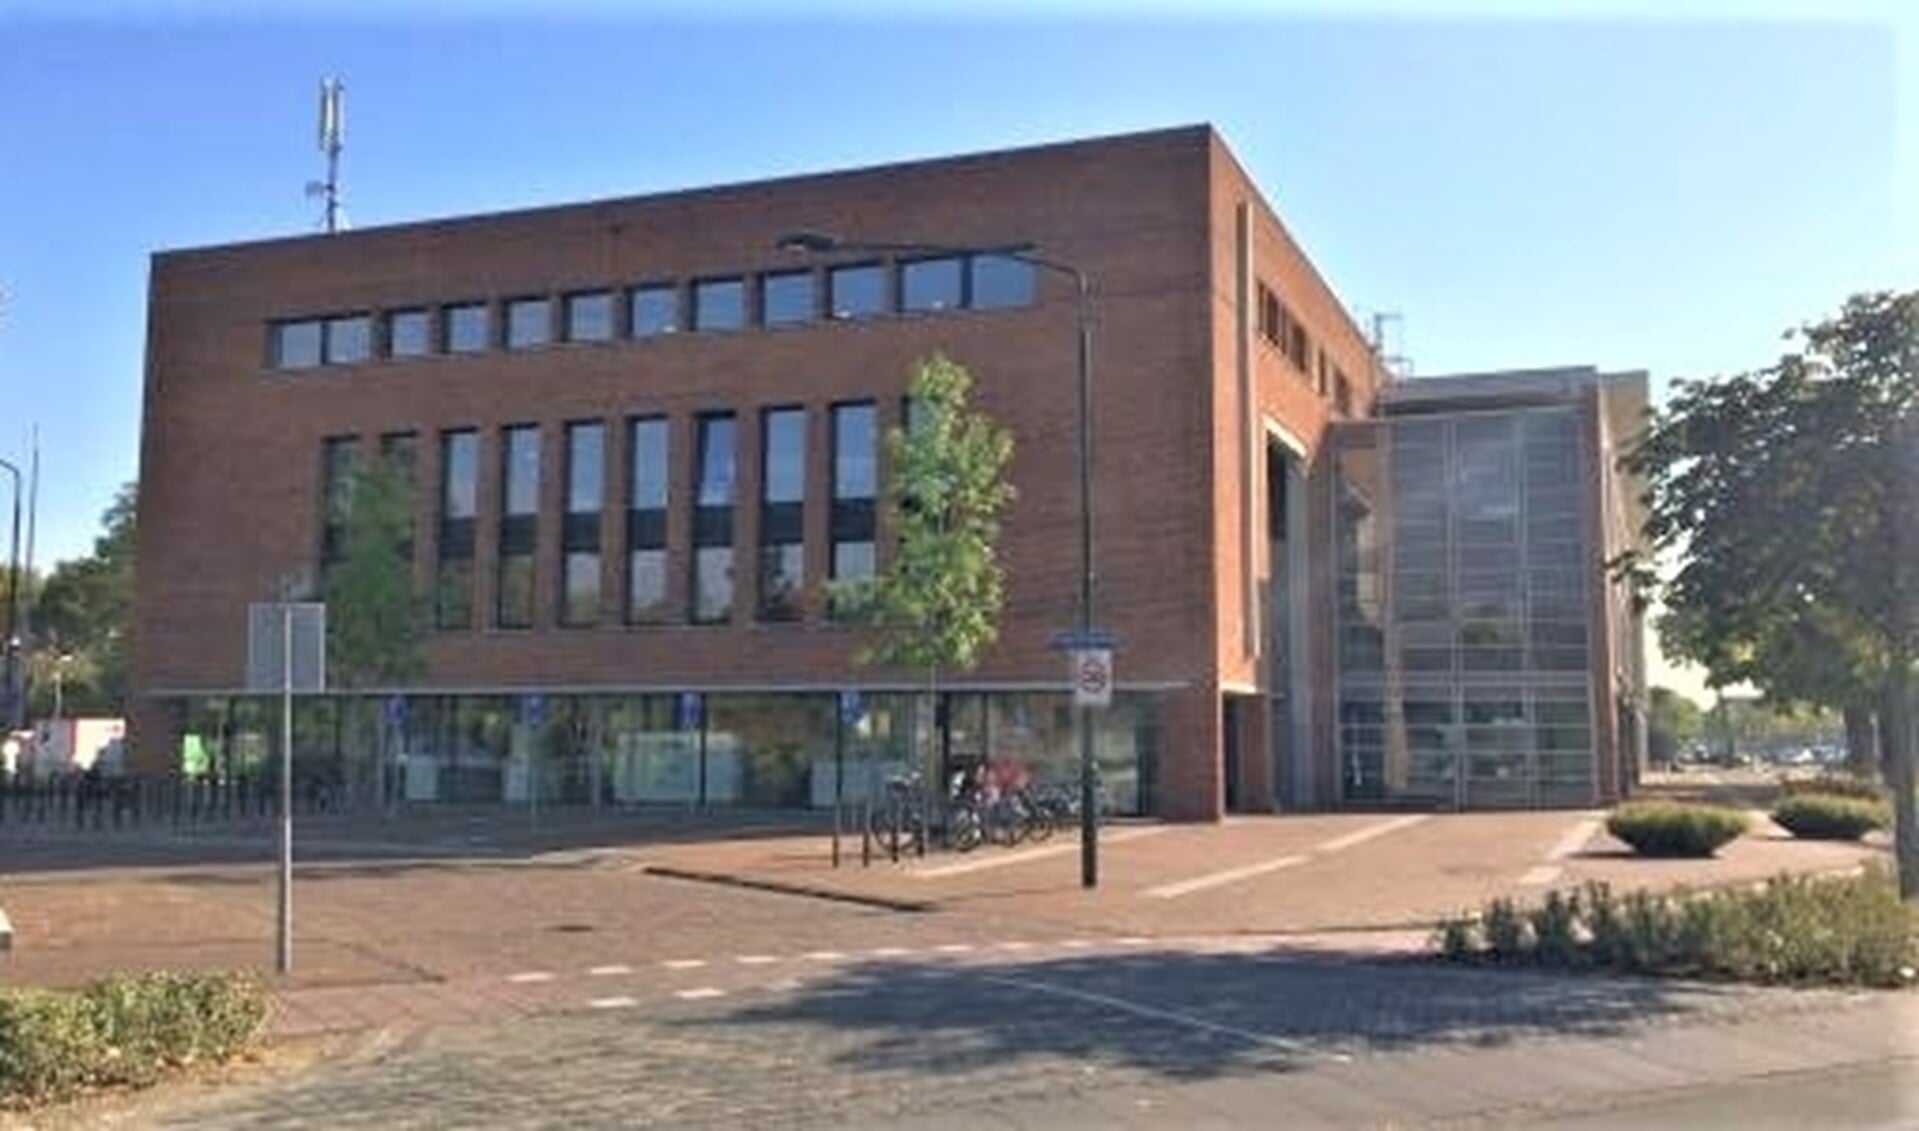 Het Servicecentrum van de gemeente Leidschendam-Voorburg aan de Koningin Wilhelminalaan in Leidschendam (foto: gemeente LDVB).